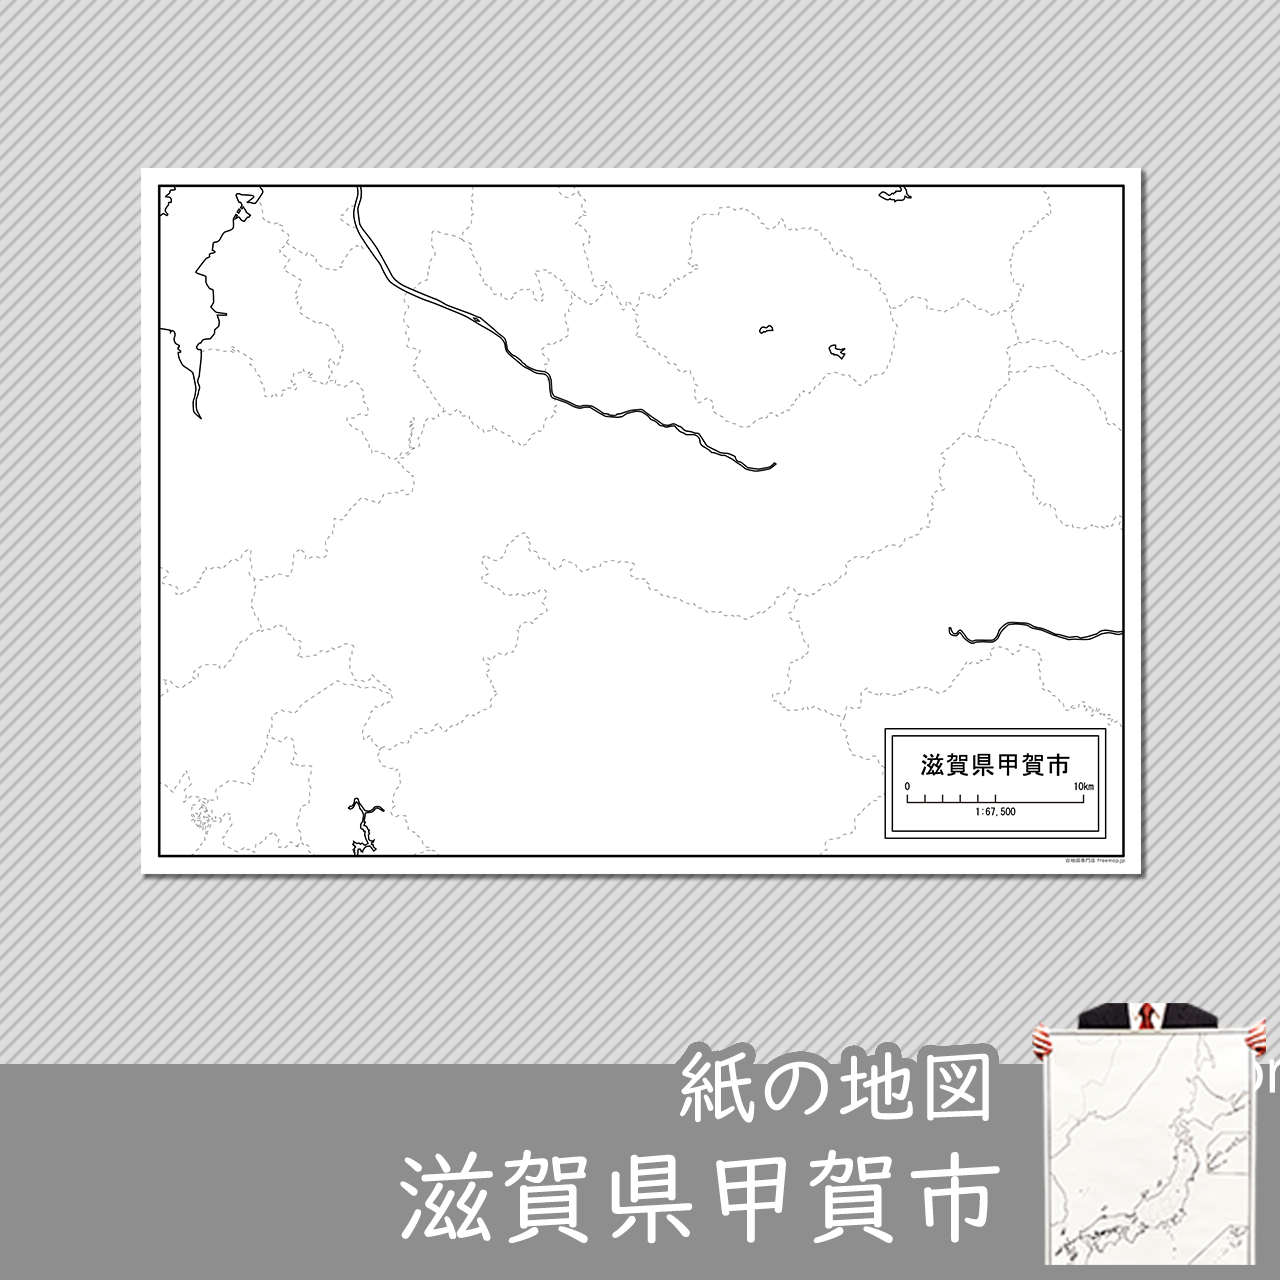 甲賀市の紙の白地図のサムネイル